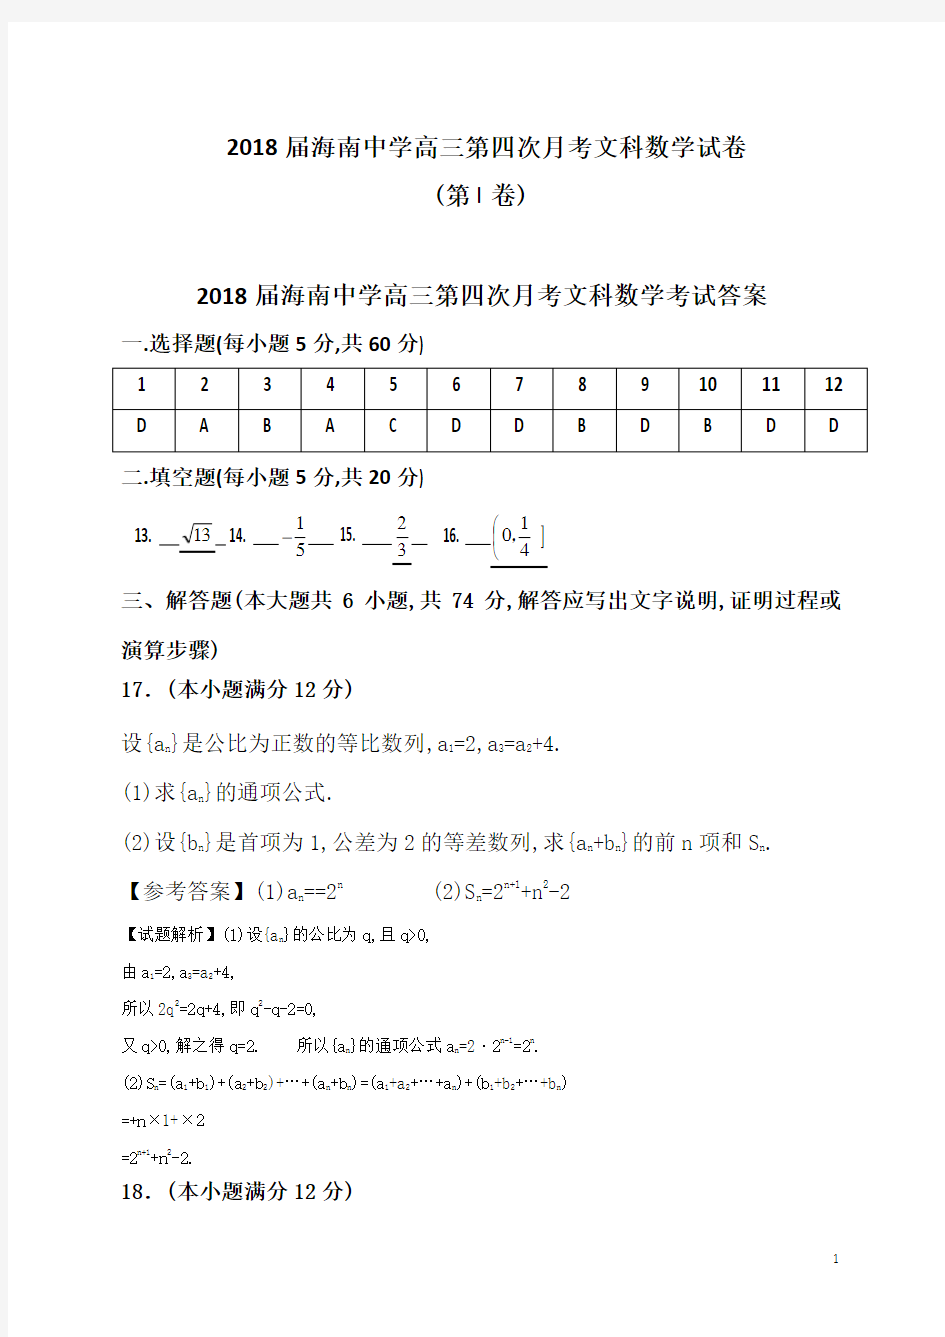 海南省海南中学高2018届高2015级高三第一学期第四次月考文科数学试题参考答案